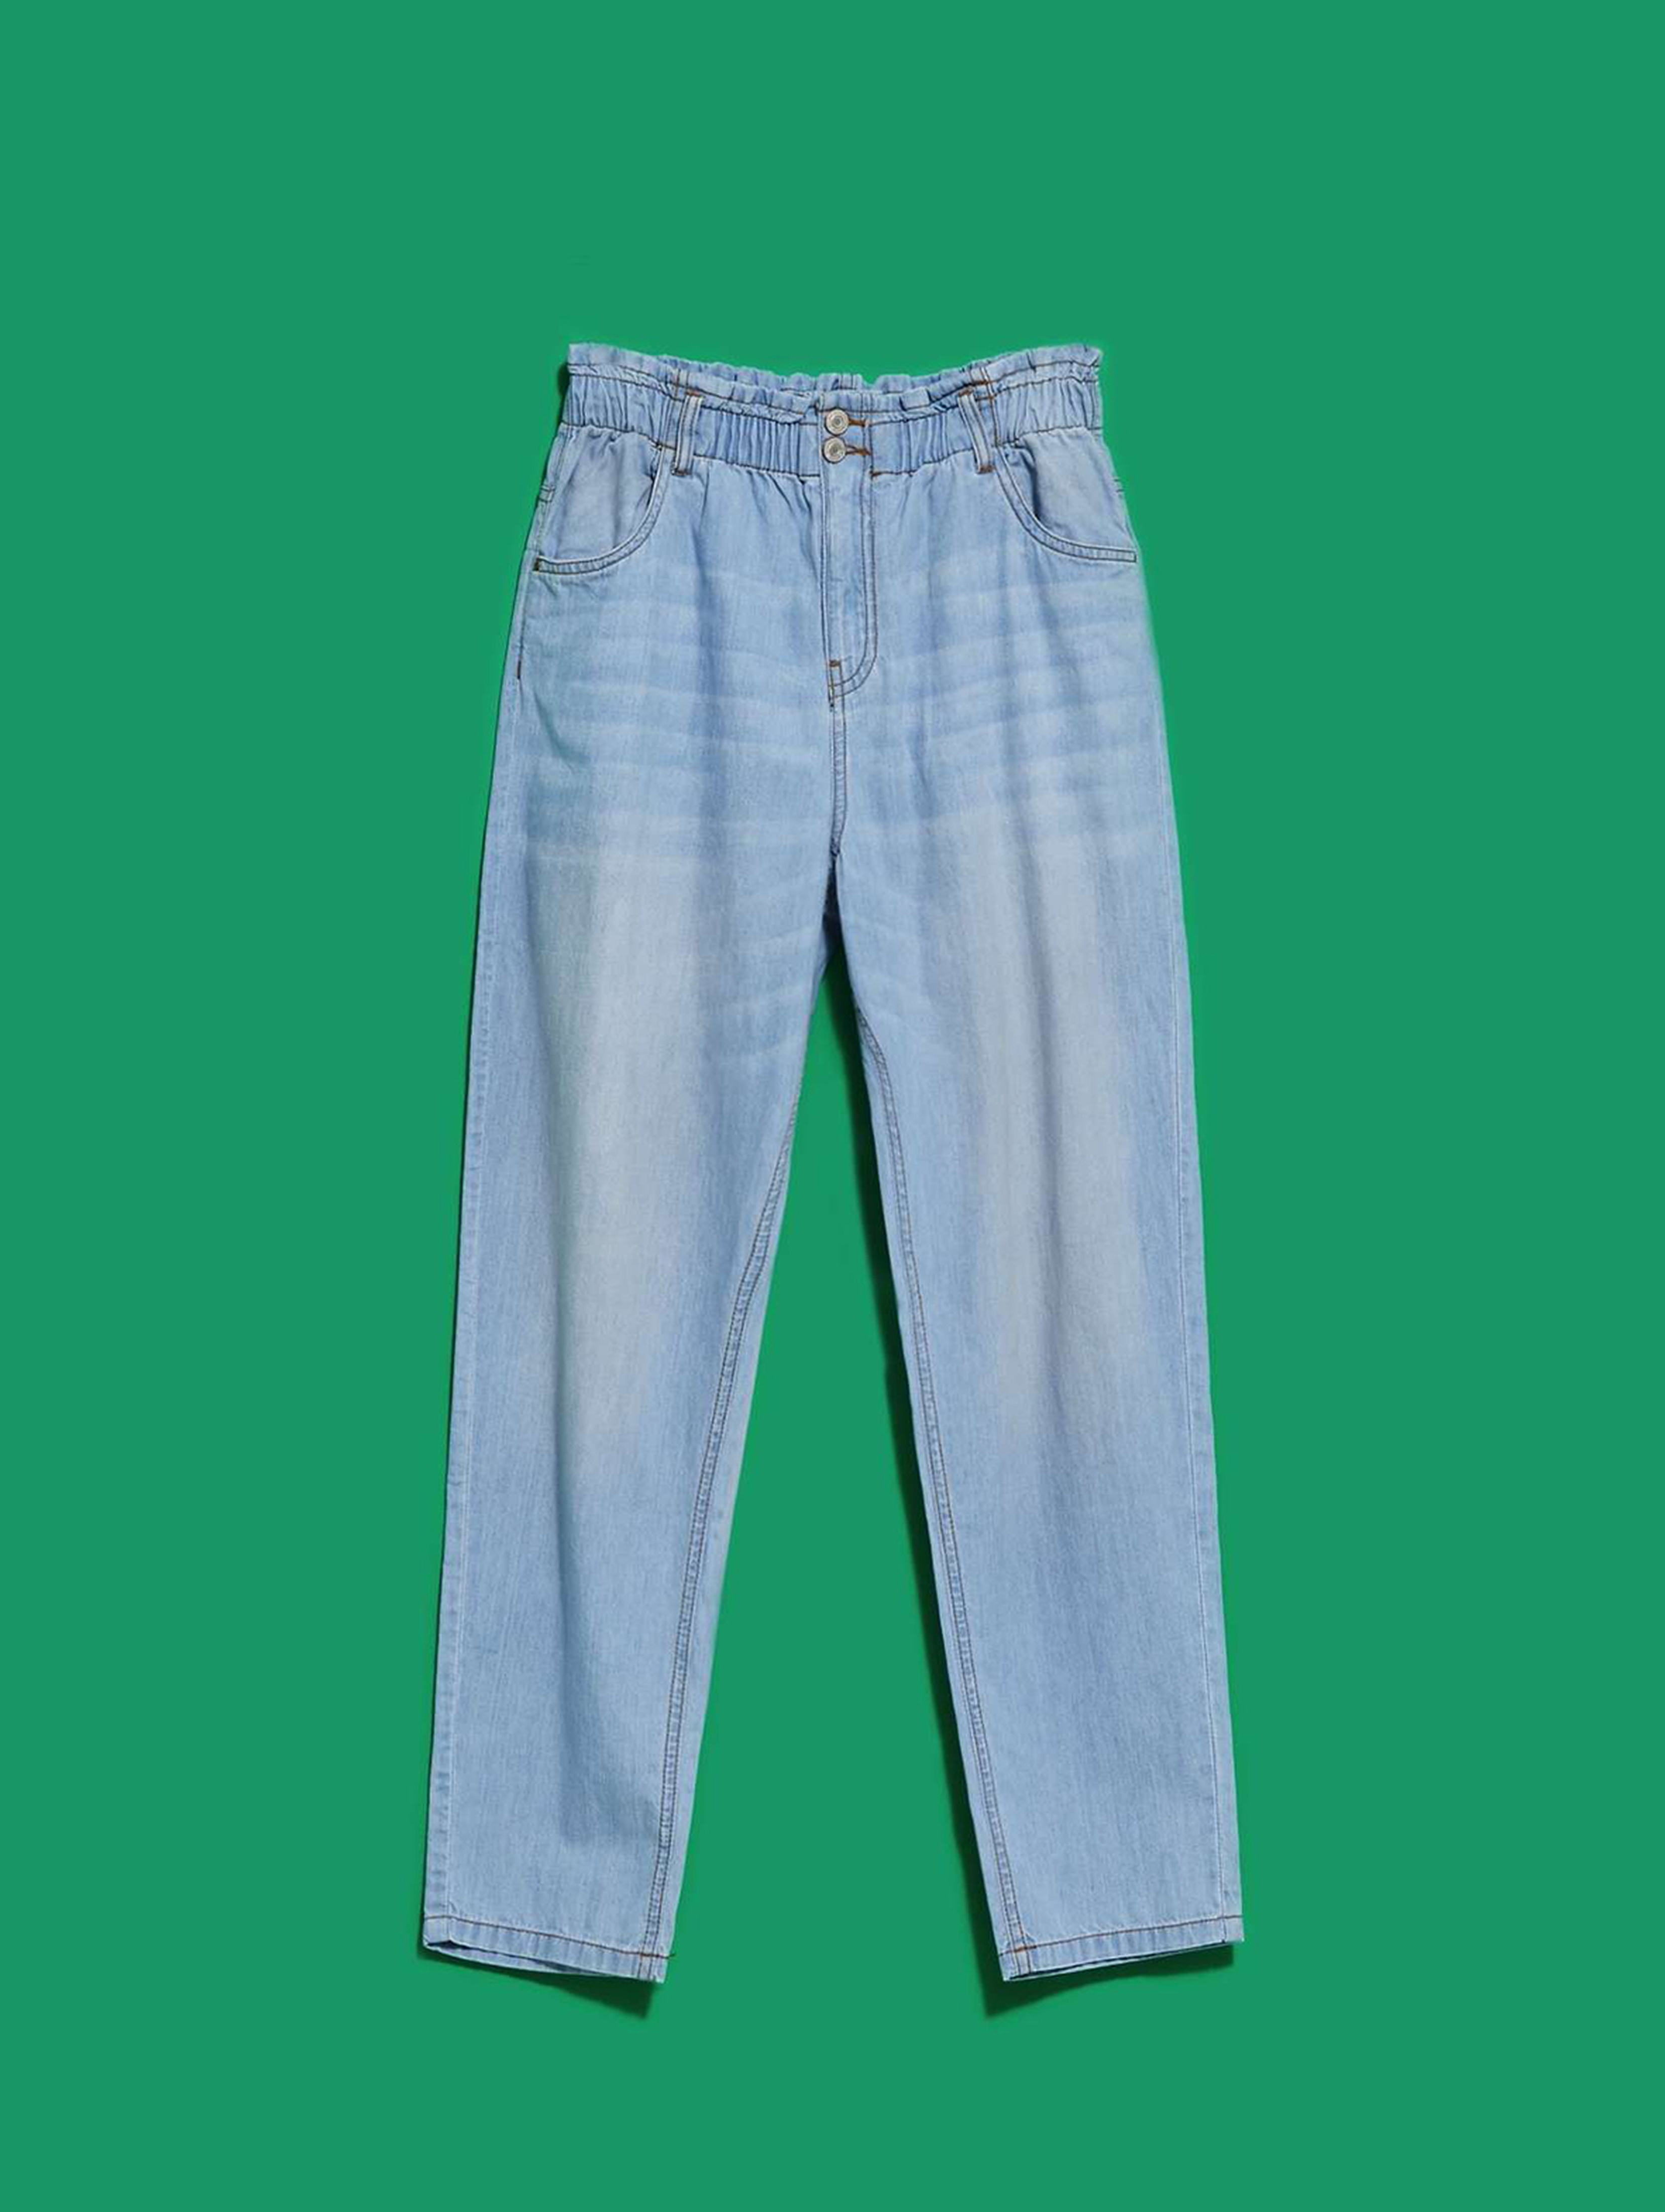 Spodnie damskie jeansowe marszczone w pasie